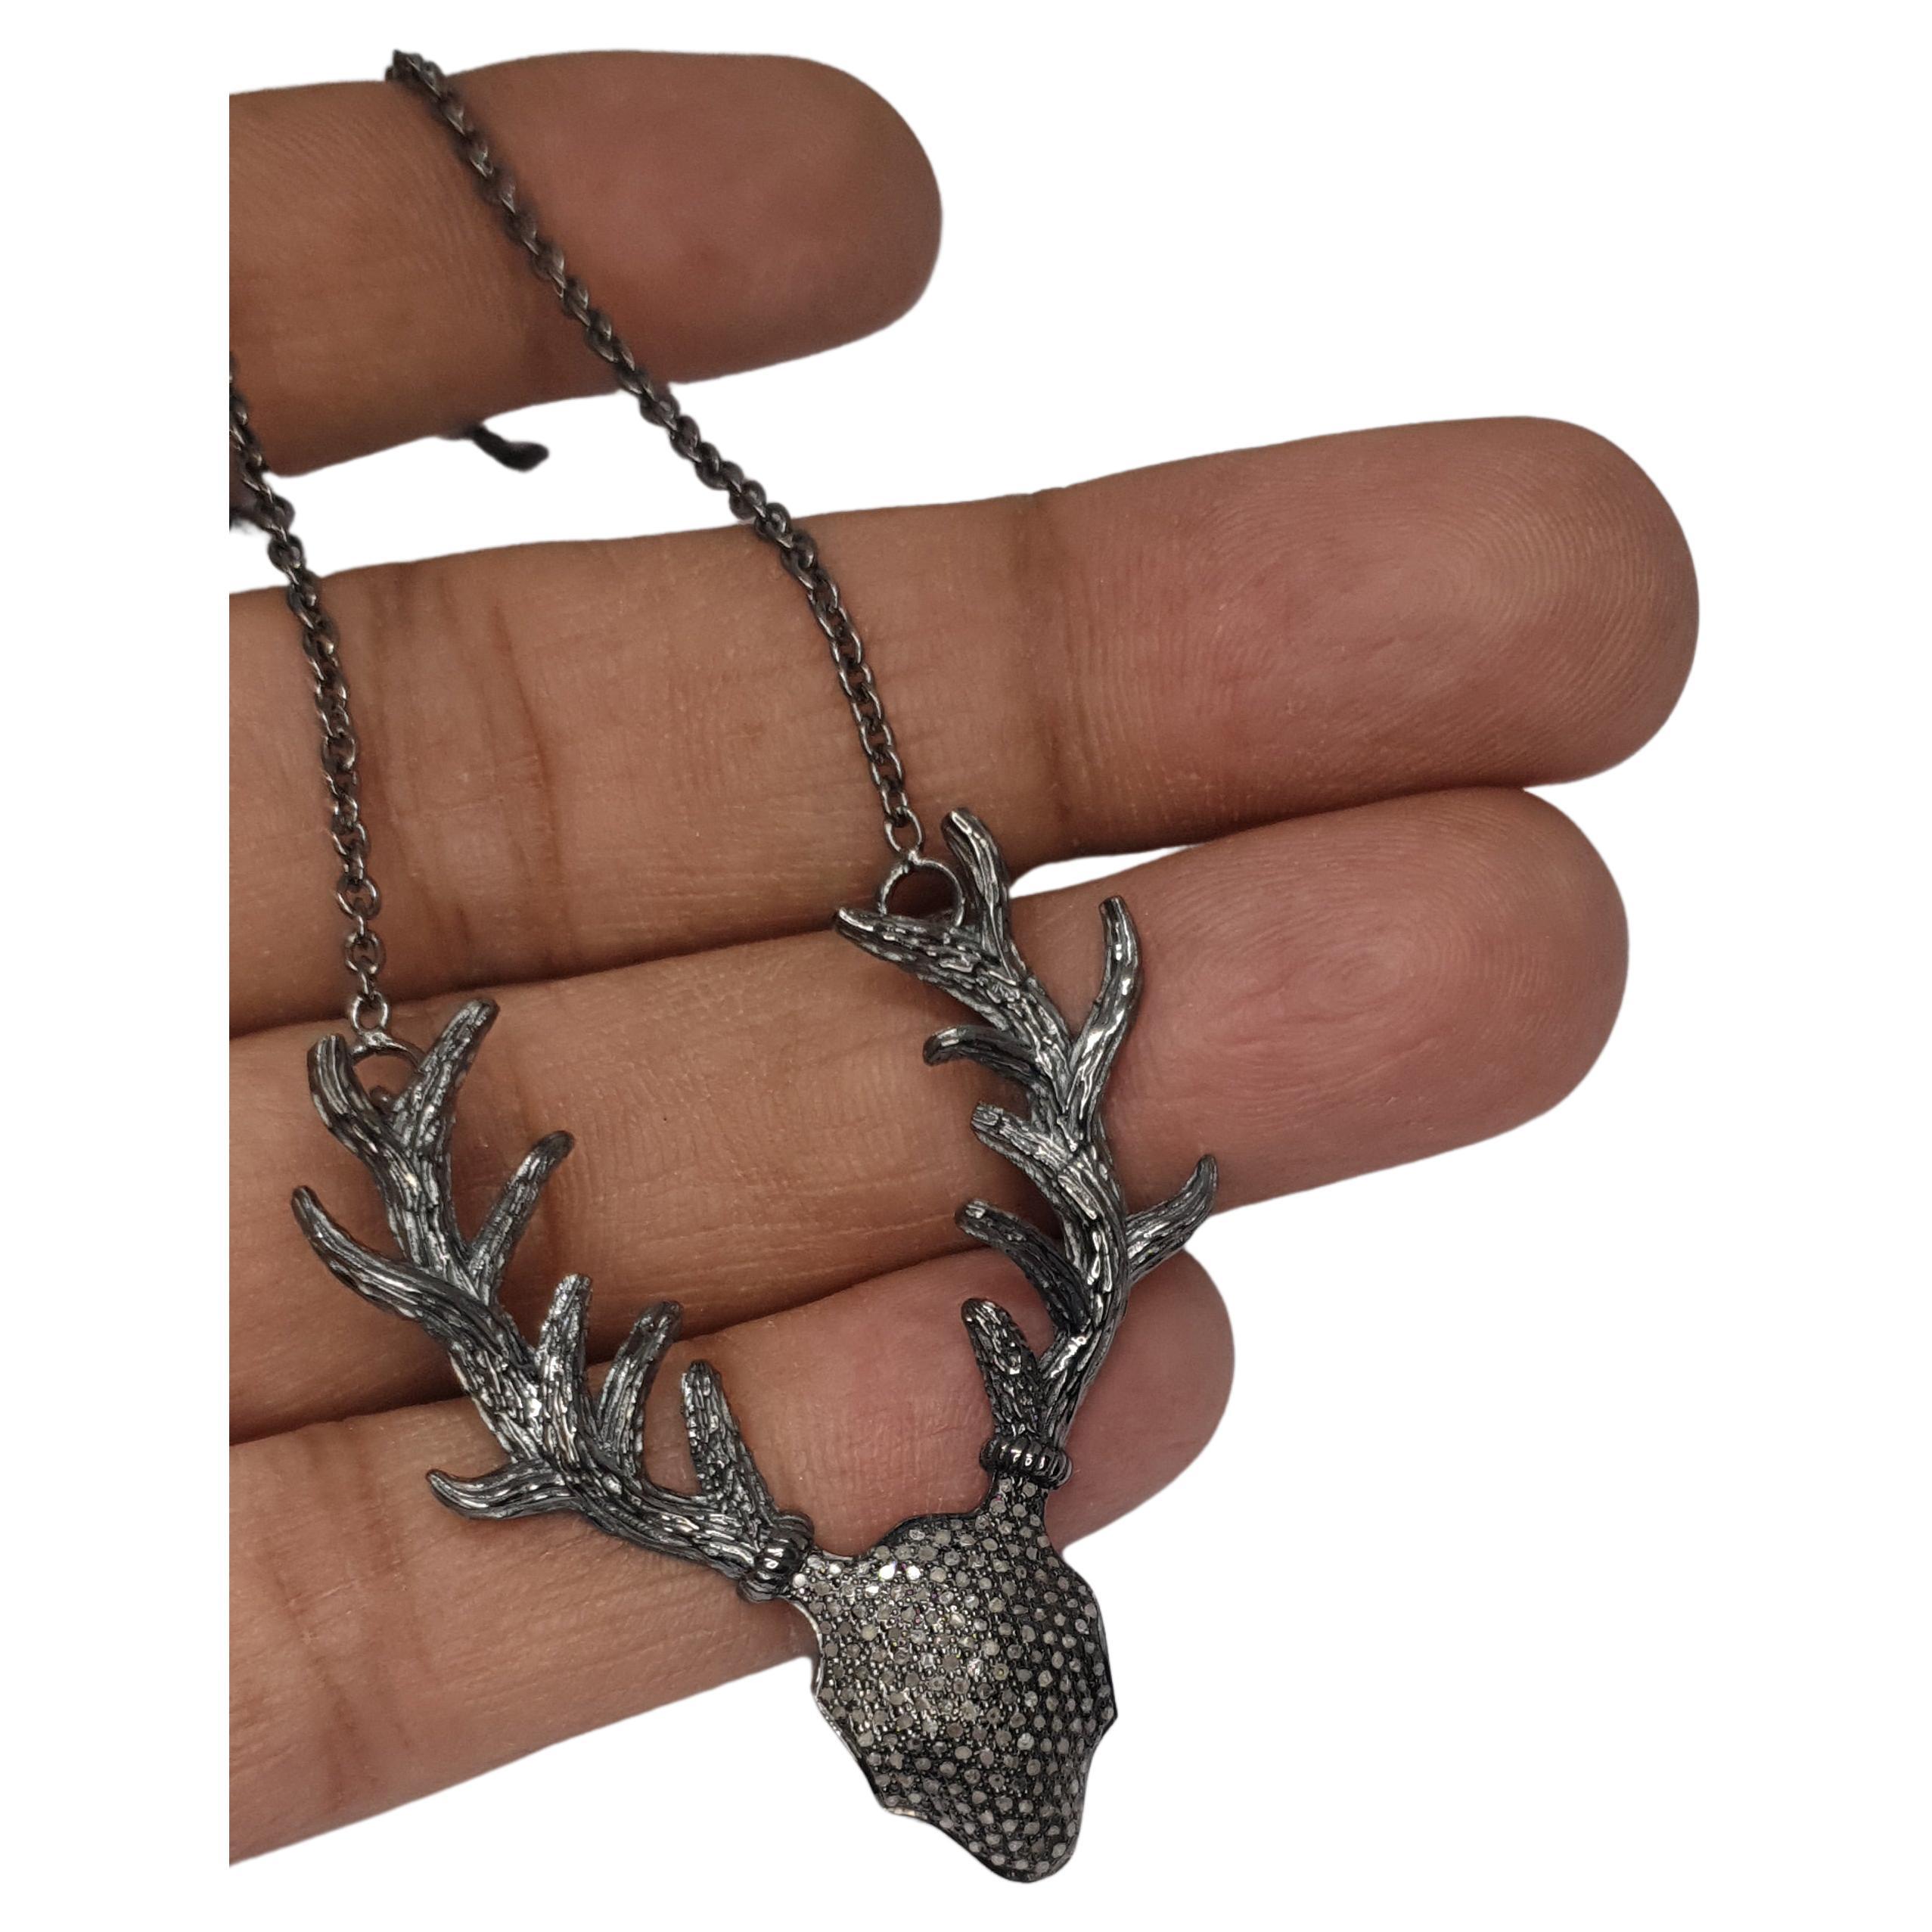 Pave Diamond Antler Deer Necklace 925 Sterling Silver Necklace Diamond Necklaces For Sale